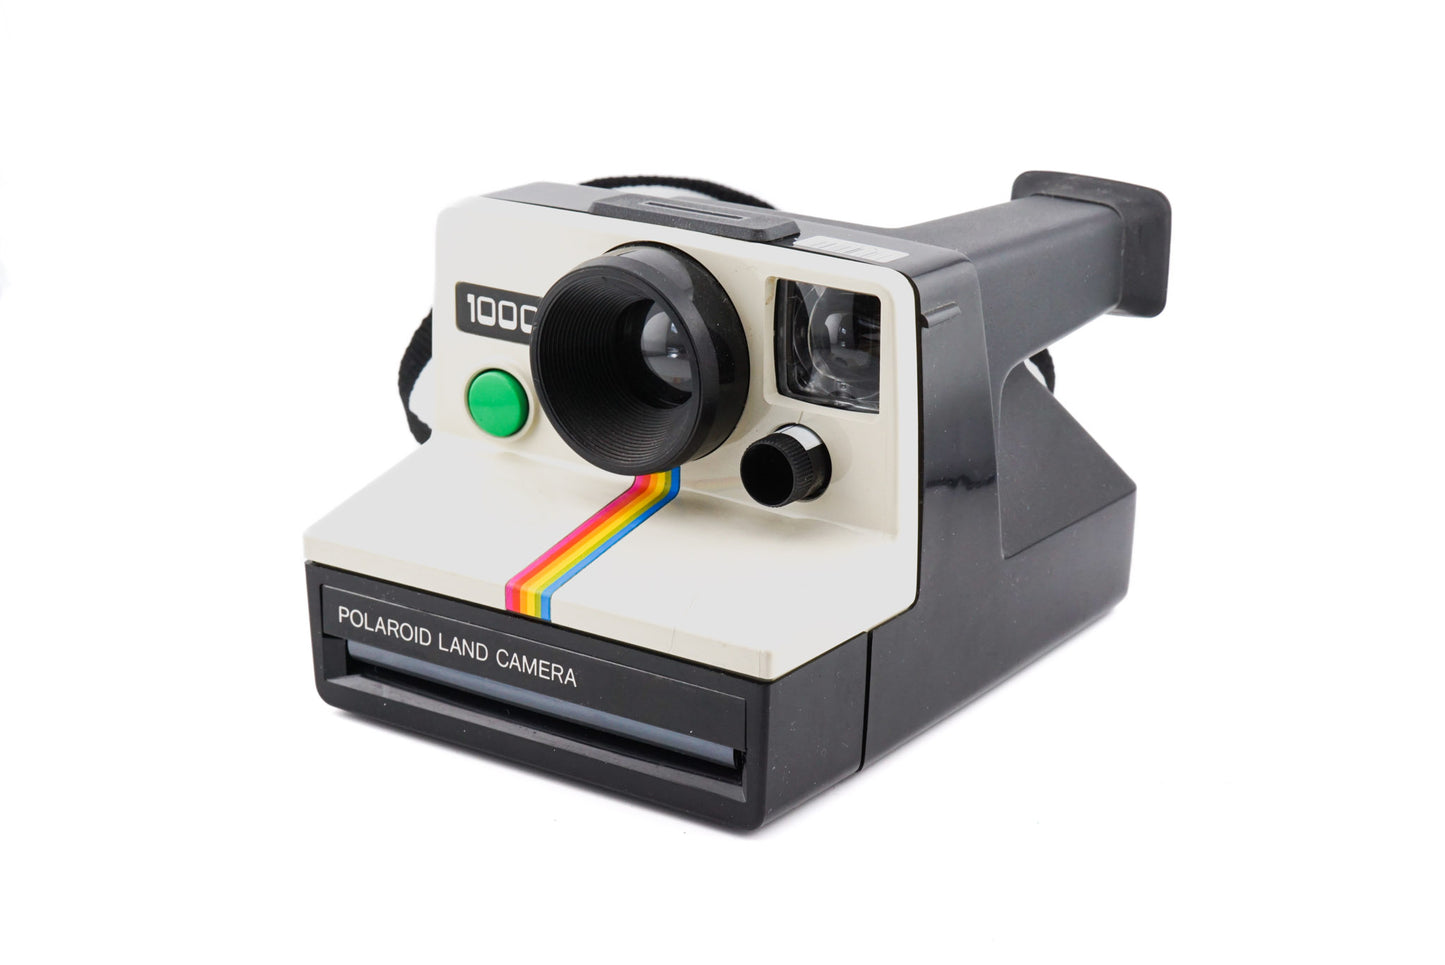 Polaroid 1000  Oferta cámara instantánea